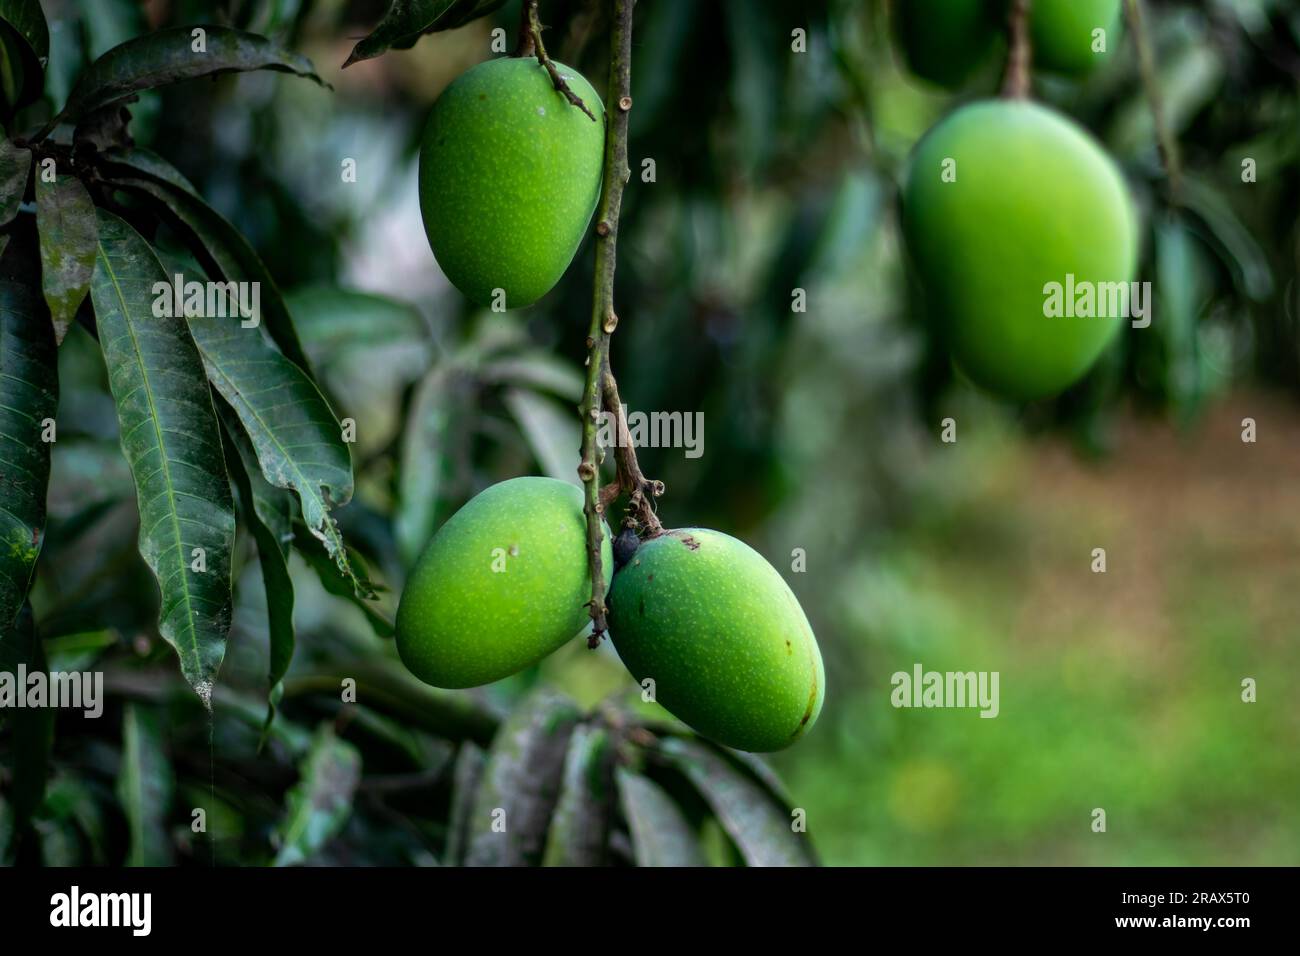 Grüne Mangos sind junge unreife Mangos. Die rohe Mangofrucht hat einen reichen Geschmack und ein Aroma, das Gedanken an schwüle Brise und sonniges Klima weckt Stockfoto